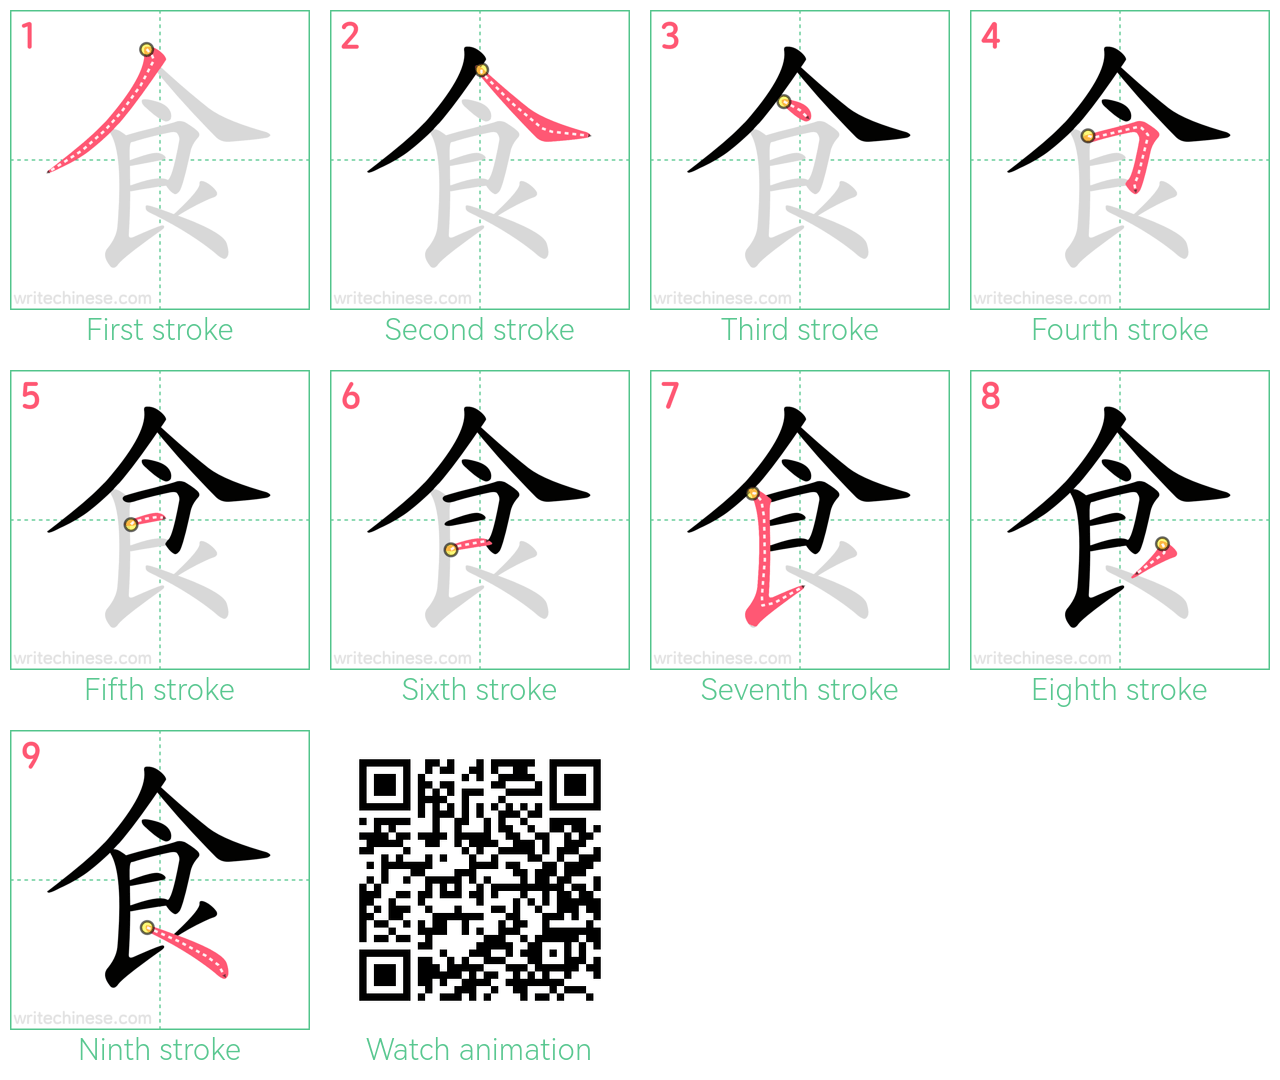 食 step-by-step stroke order diagrams